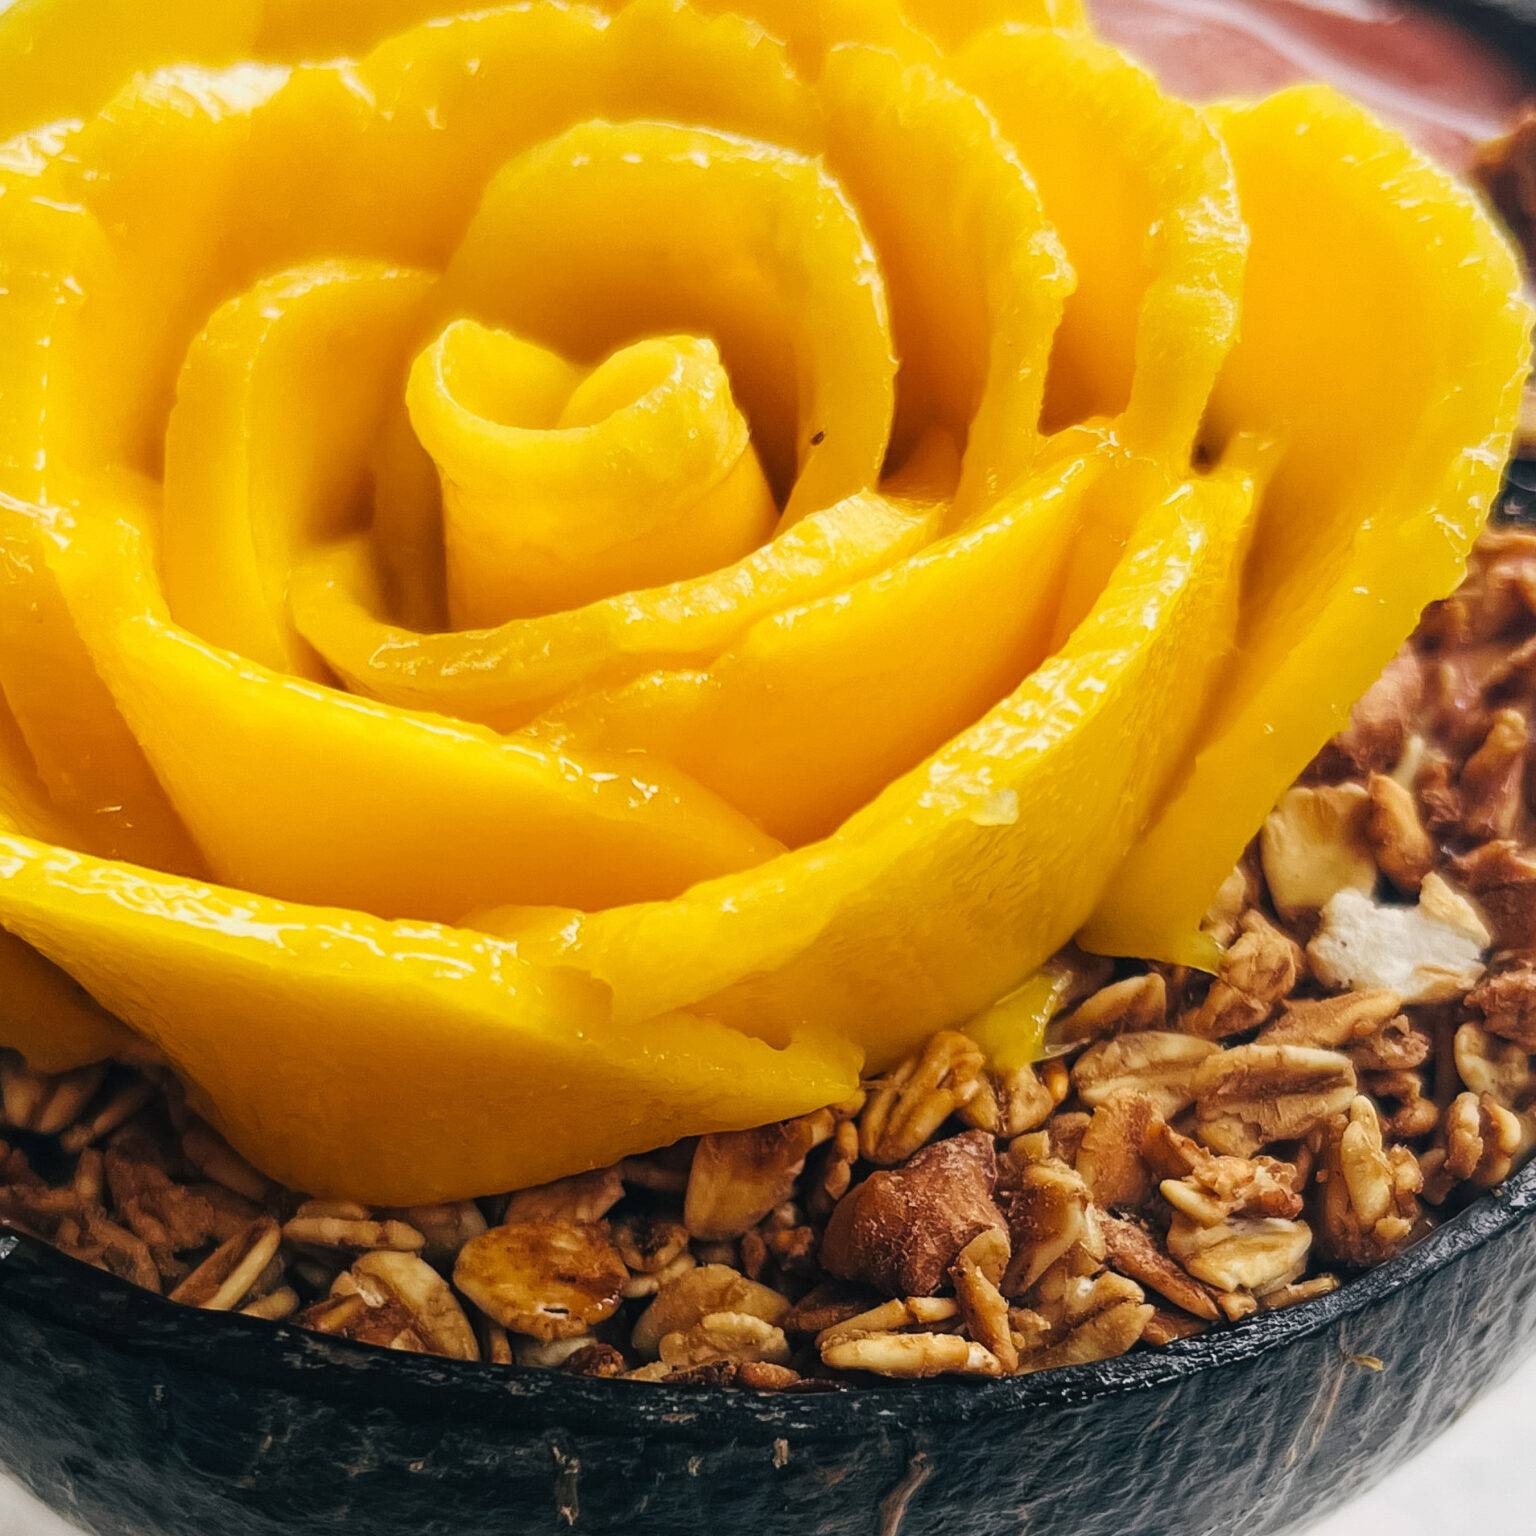 Eine leckere Bowl kunstvoll verziert mit einer Mango-Rose.